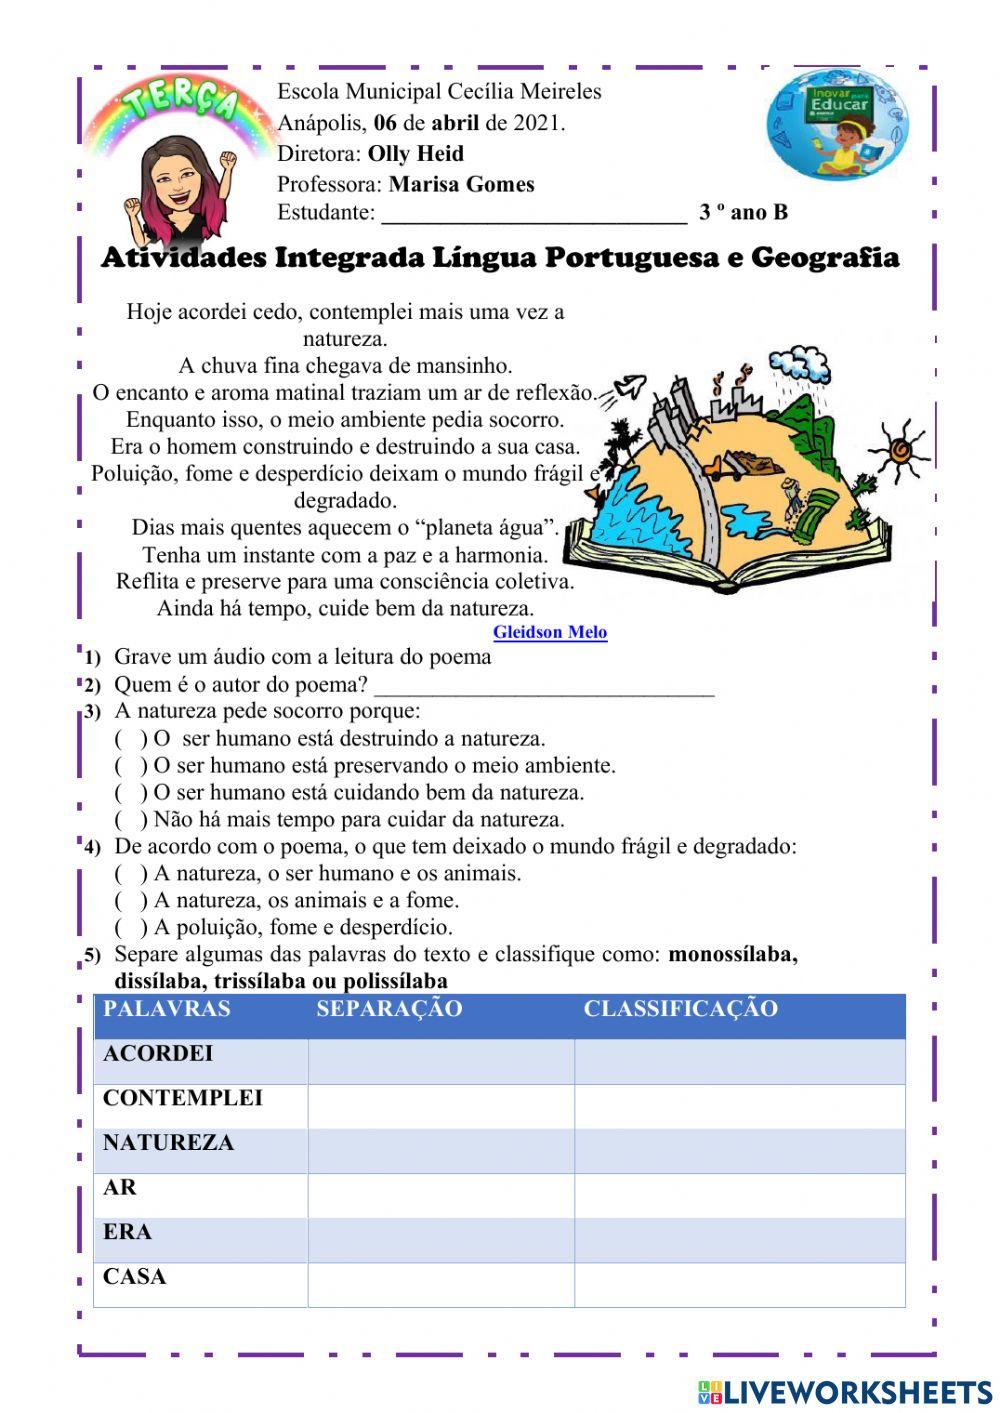 Atividade Integrada L. Portuguesa e Geografia -06 de abril